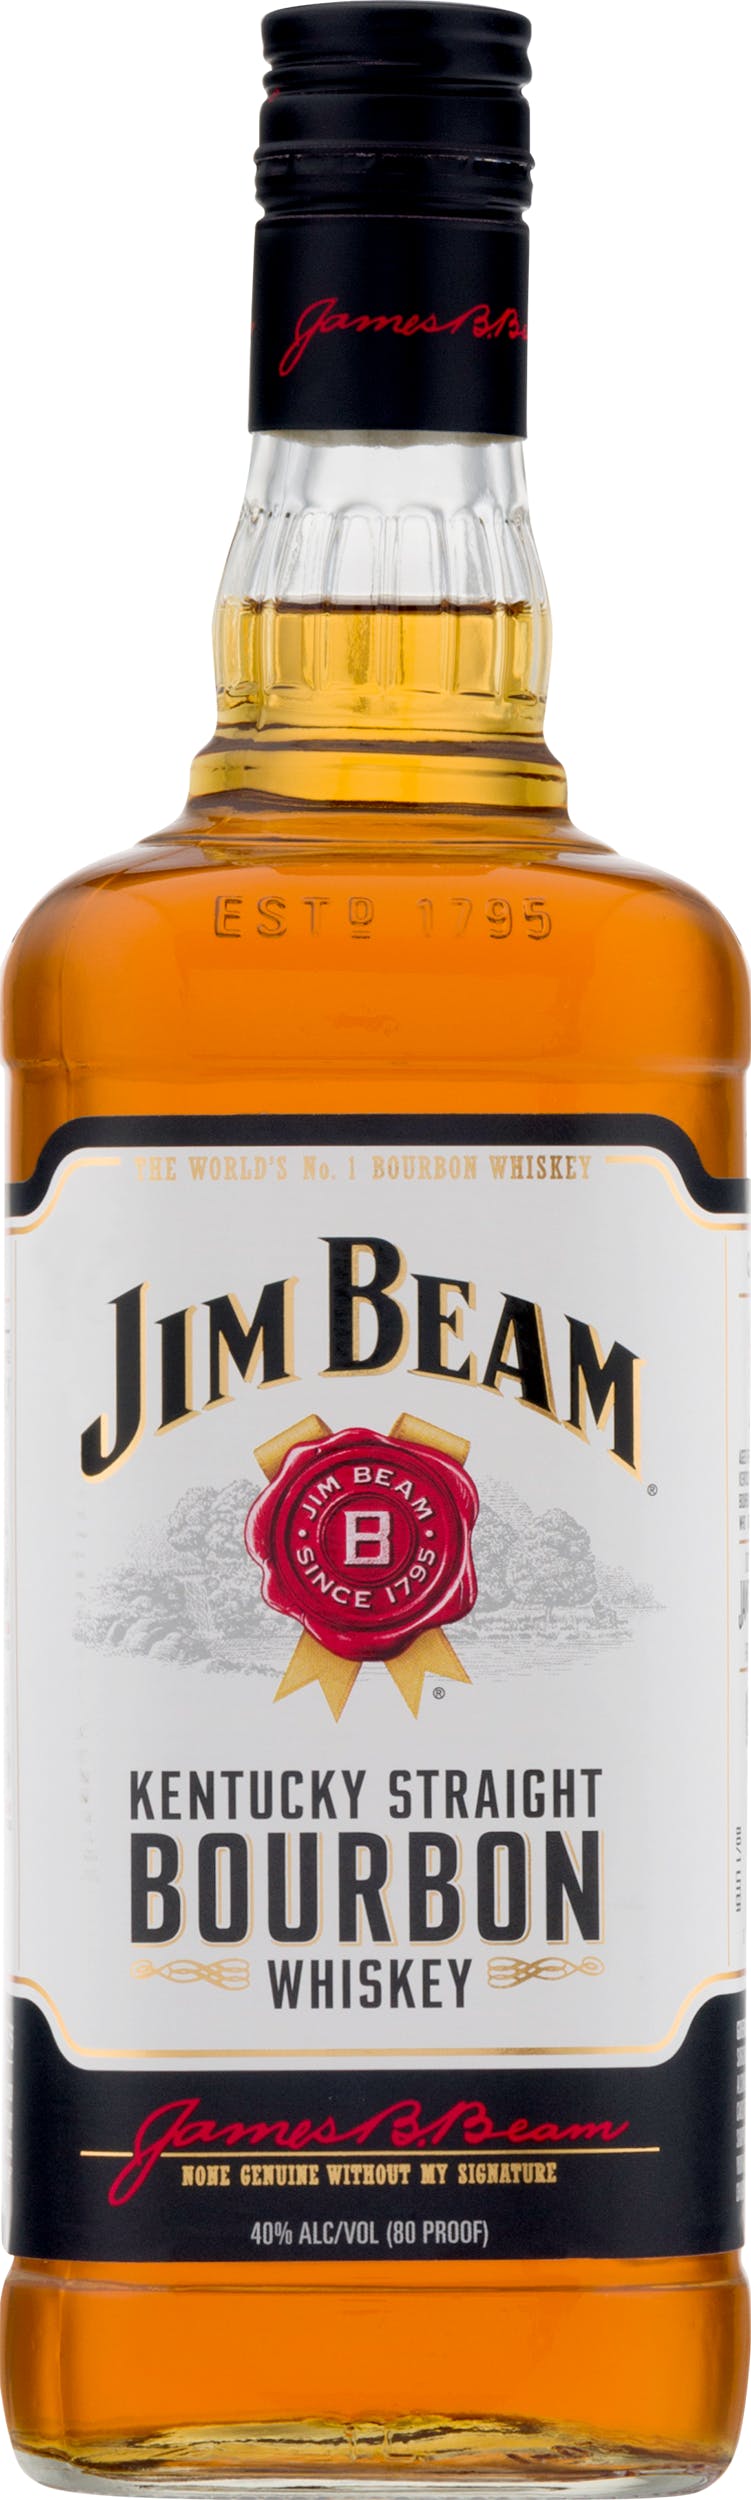 Jim Beam Wine Bourbon 1L Kentucky Liquor - Whiskey & Argonaut Straight